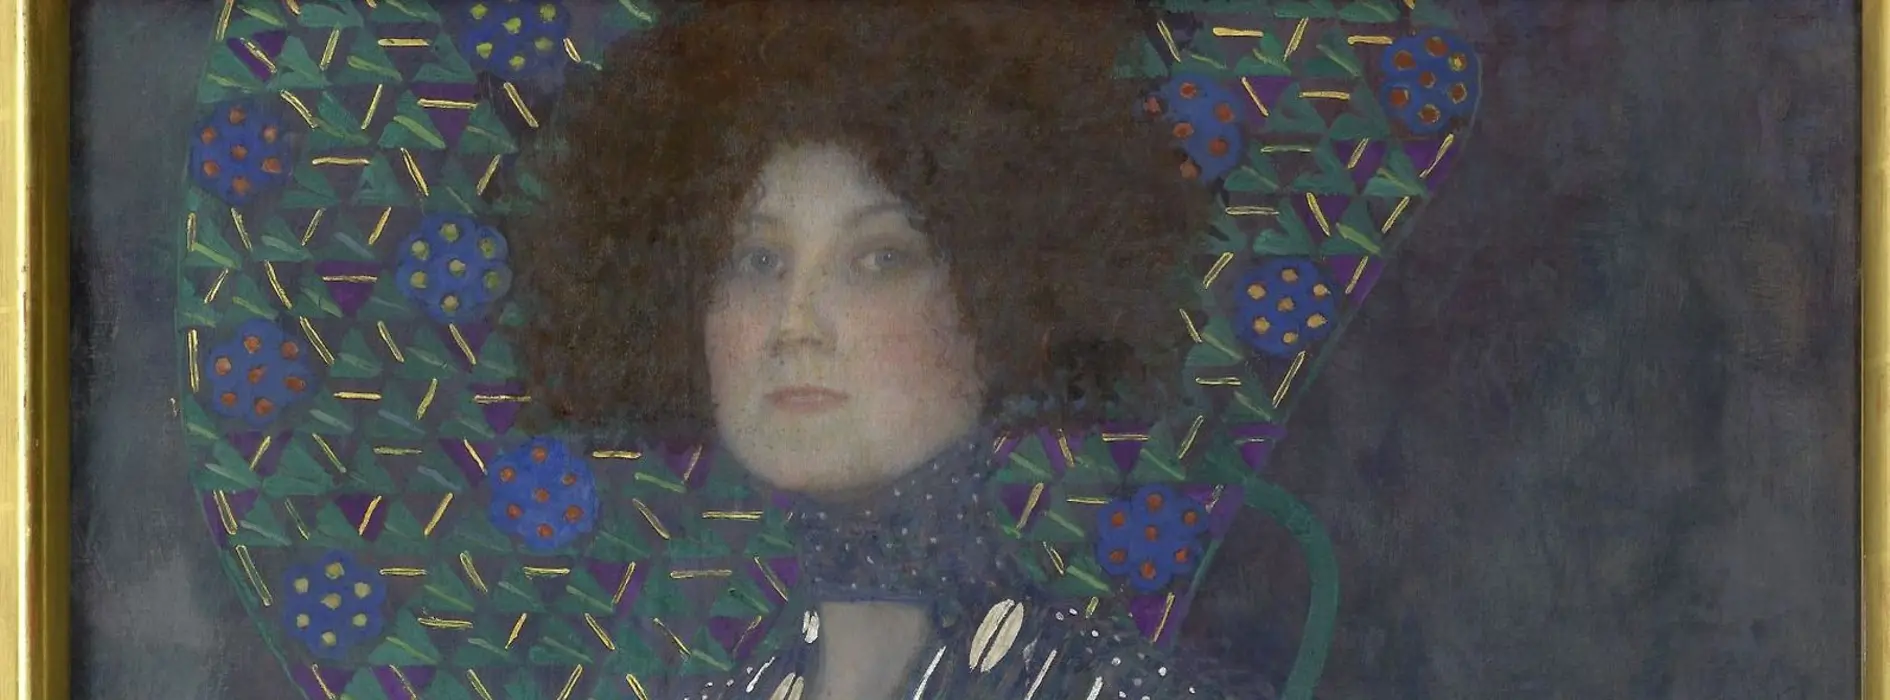 Gustav Klimt: Bildnis Emilie Flöge (1902) [Portret Emilie Flöge (1902)]